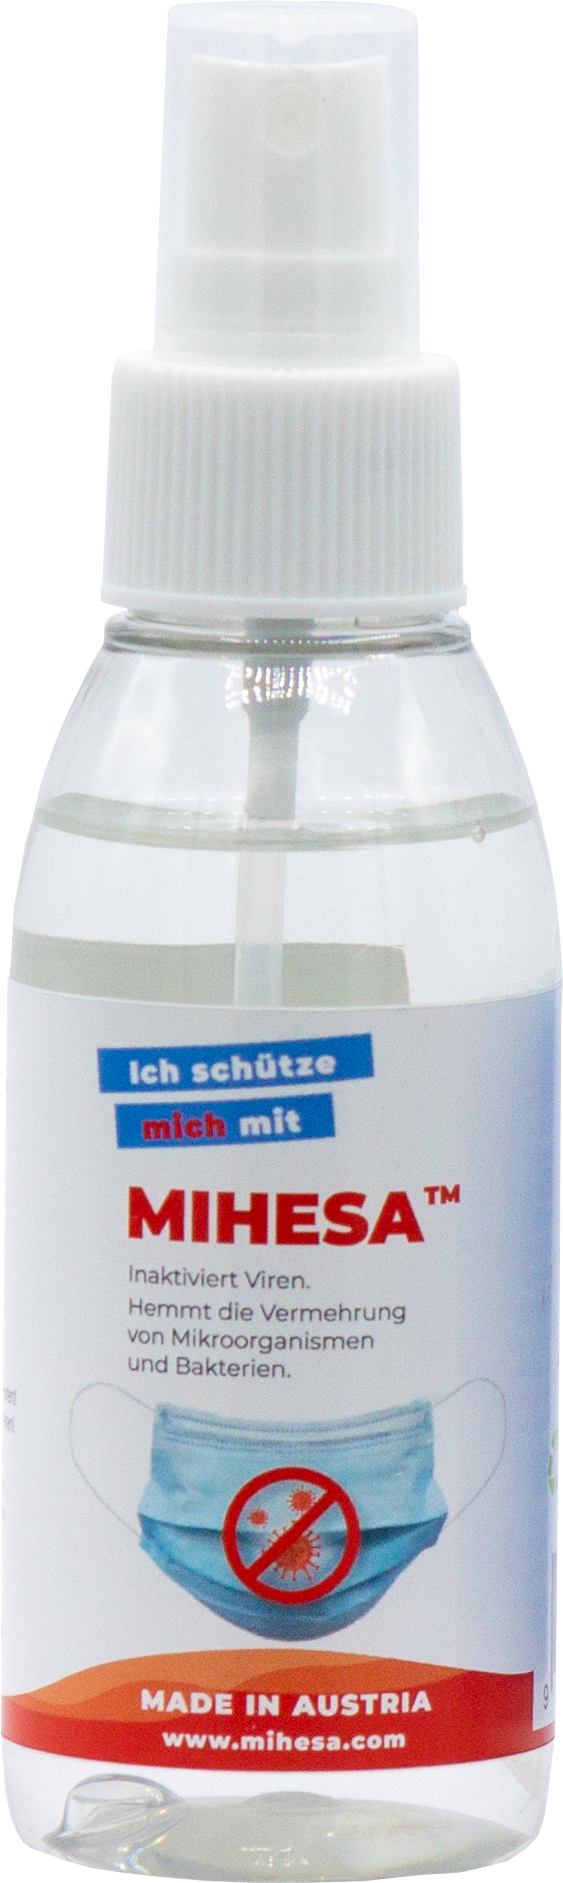 Mihesa Desinfektions- und Imprägnierspray für MNS